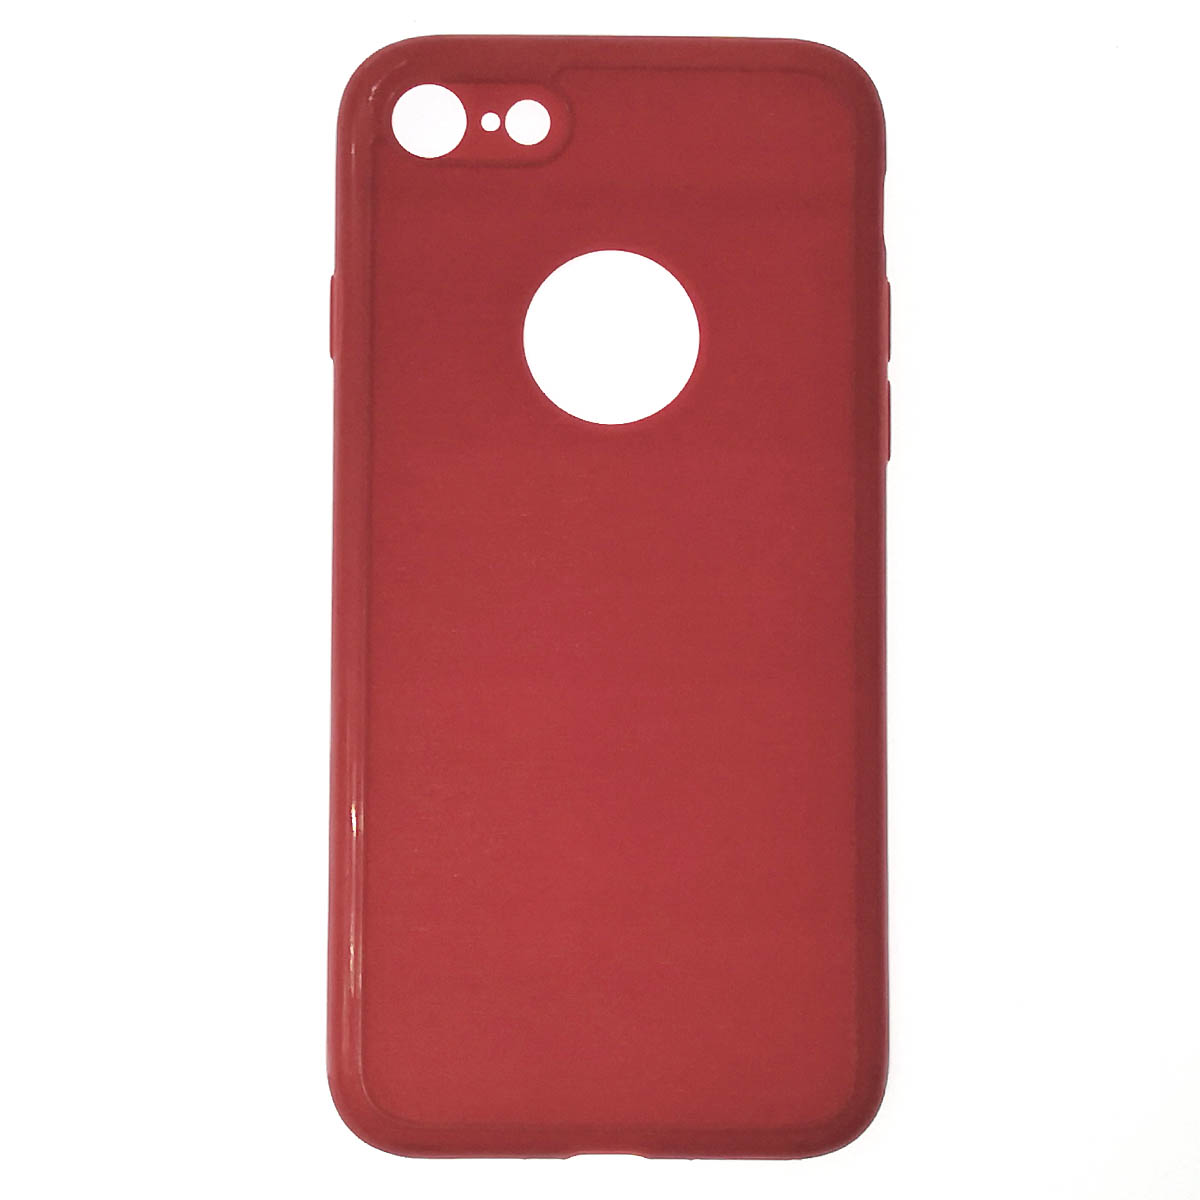 Чехол накладка для APPLE iPhone 7, iPhone 8, iPhone SE 2020, силикон, текстура, цвет красный